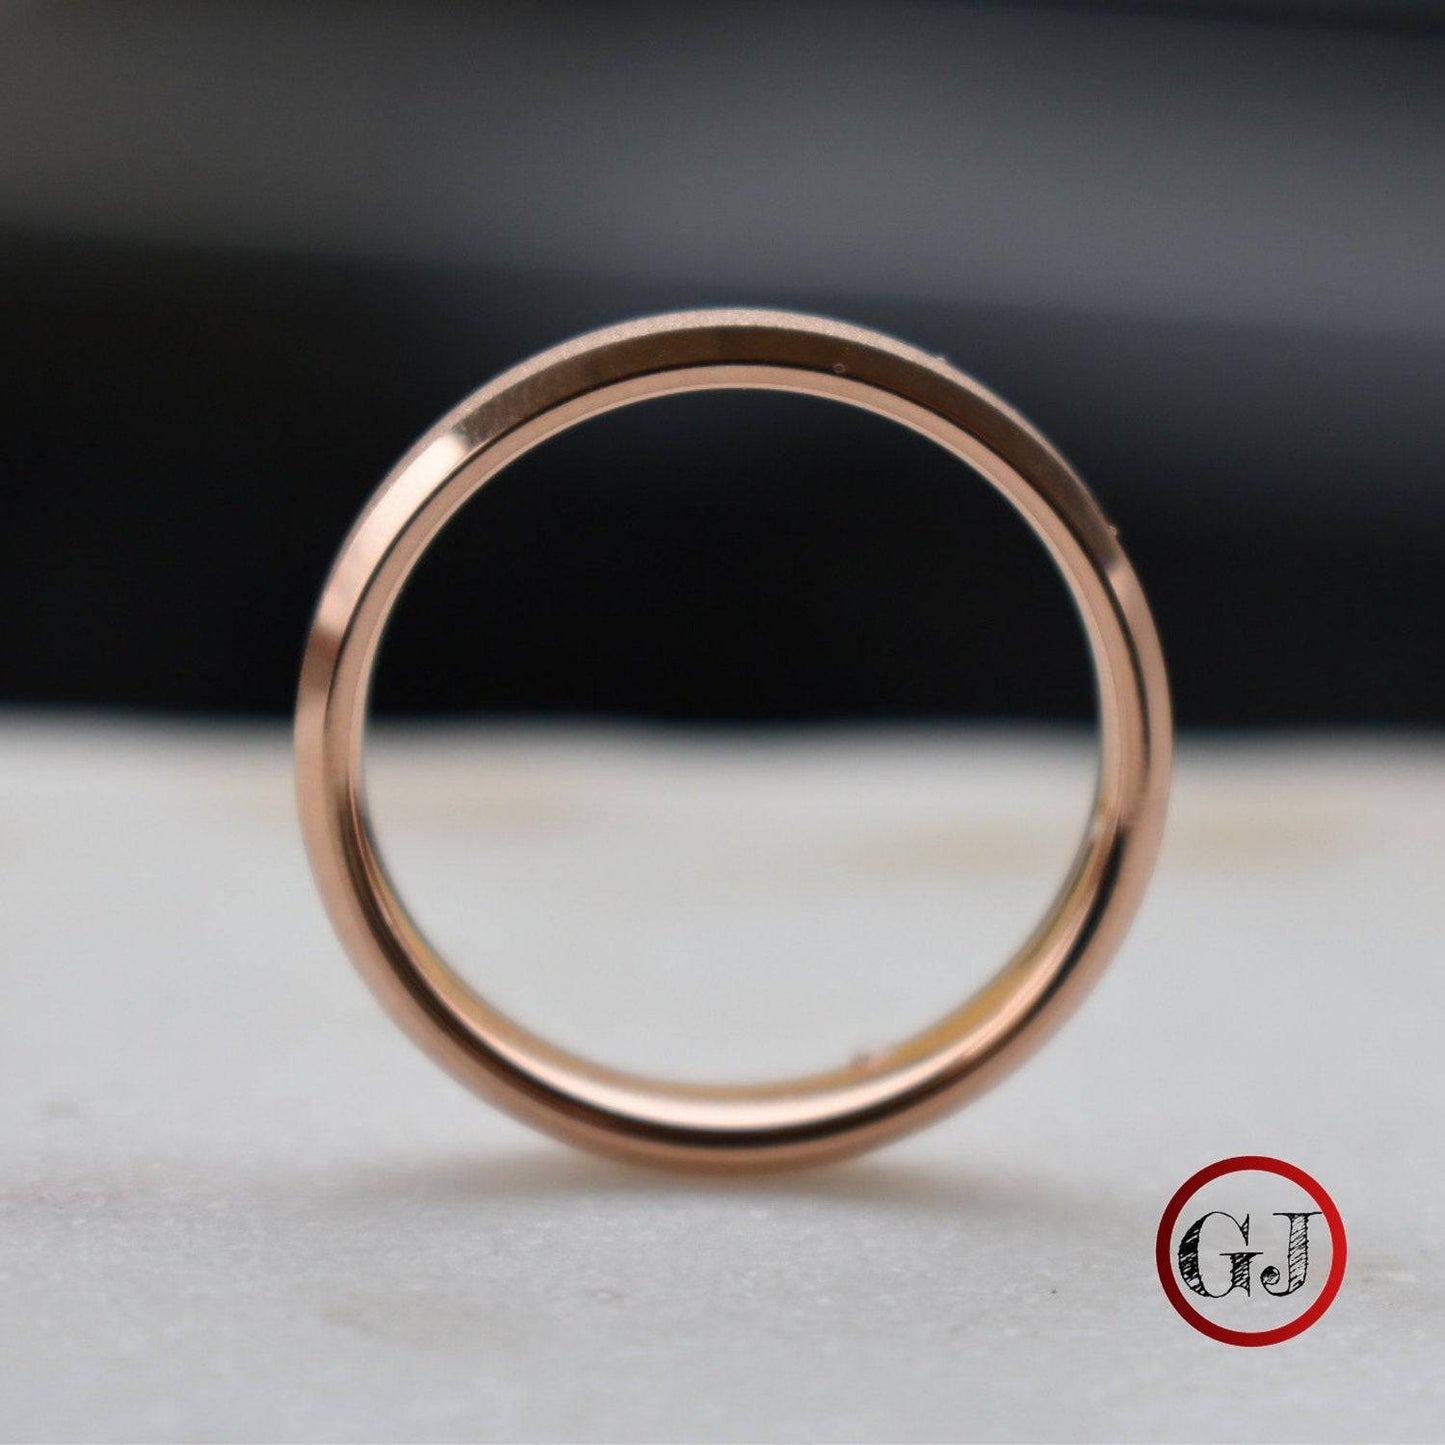 Tungsten 4mm Ring Rose Gold Sandblasted Wedding Band - Tungsten Titans